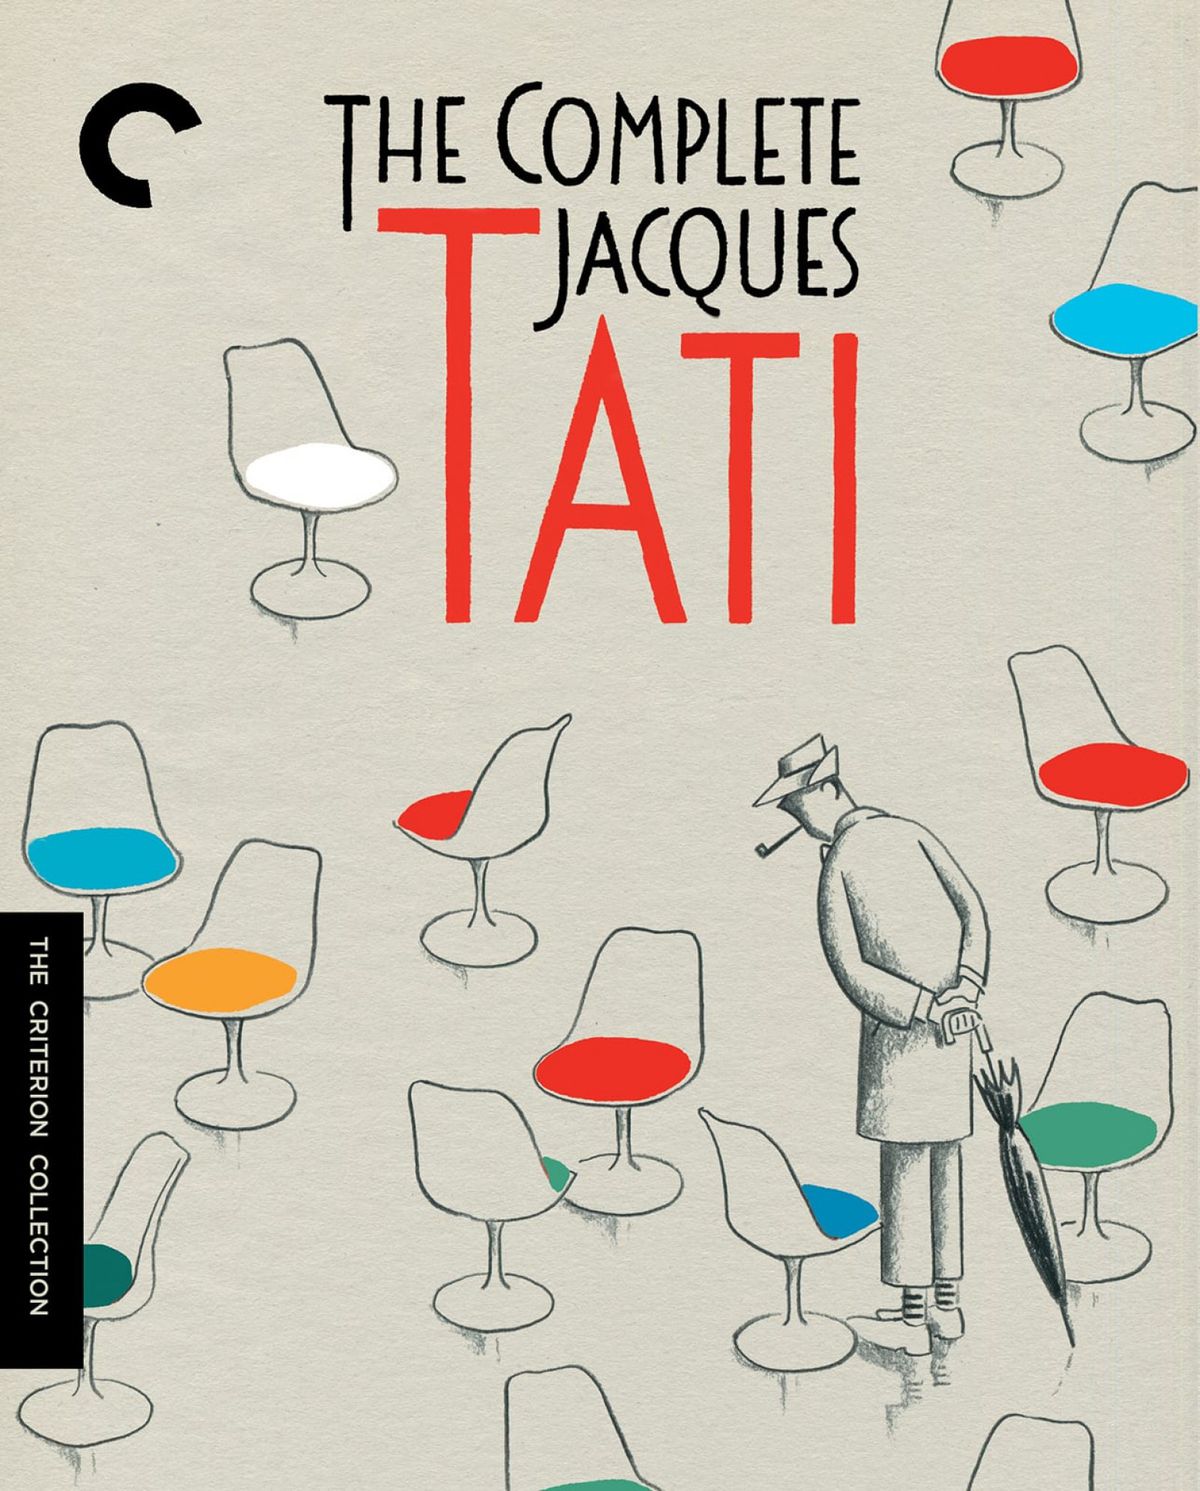 Copertina del cofanetto Criterion Collection di The Complete Jacques Tati.